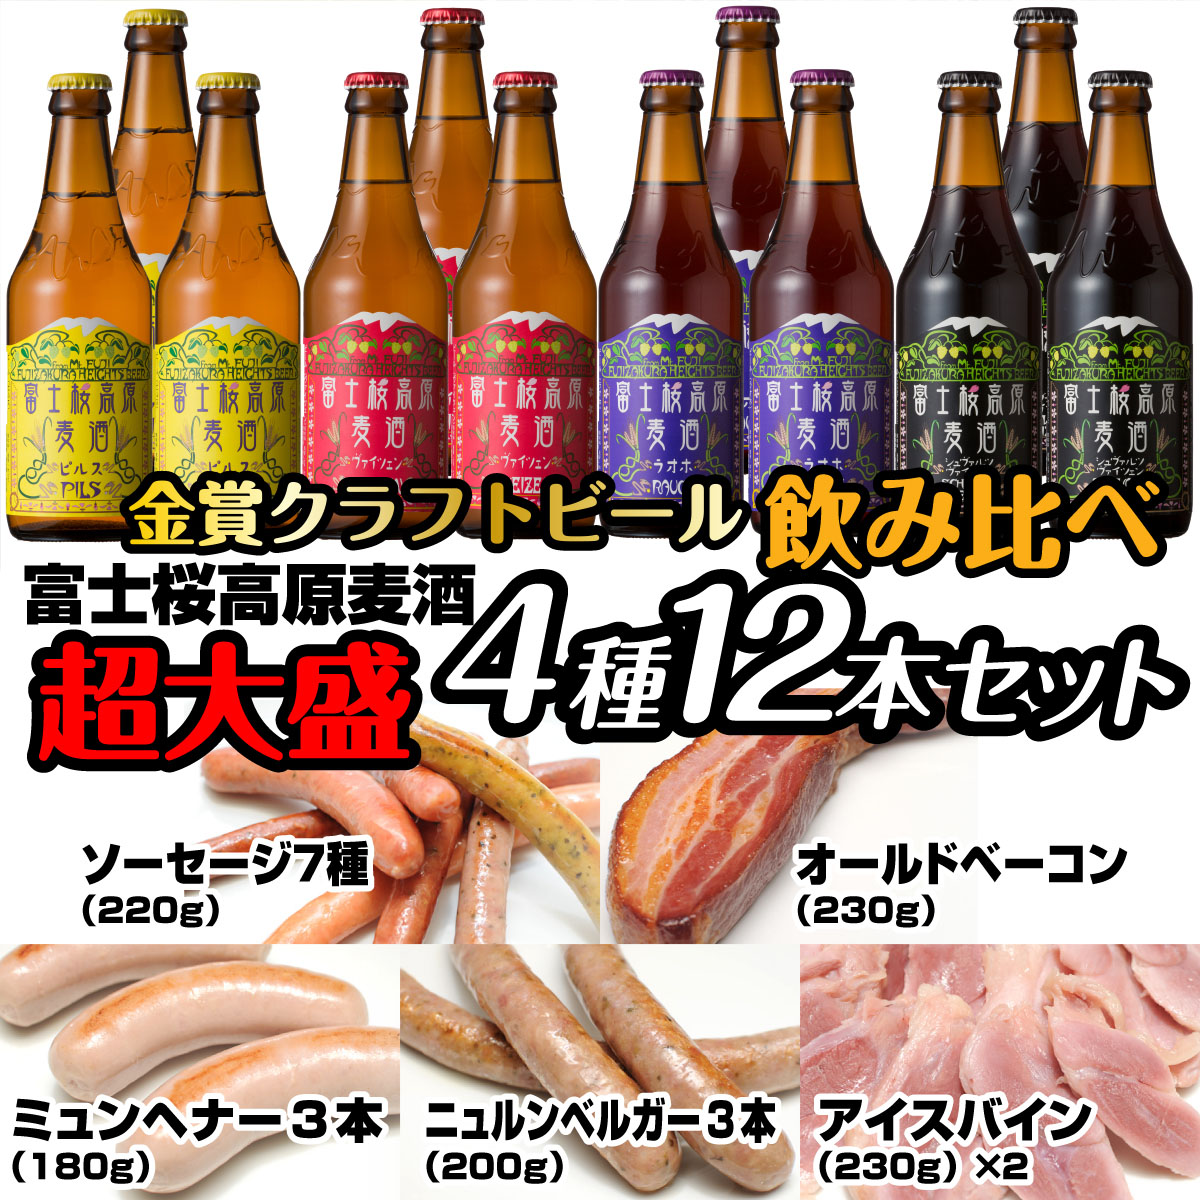 富士桜高原麦酒超大盛12本セット 金賞クラフトビール飲み比べ